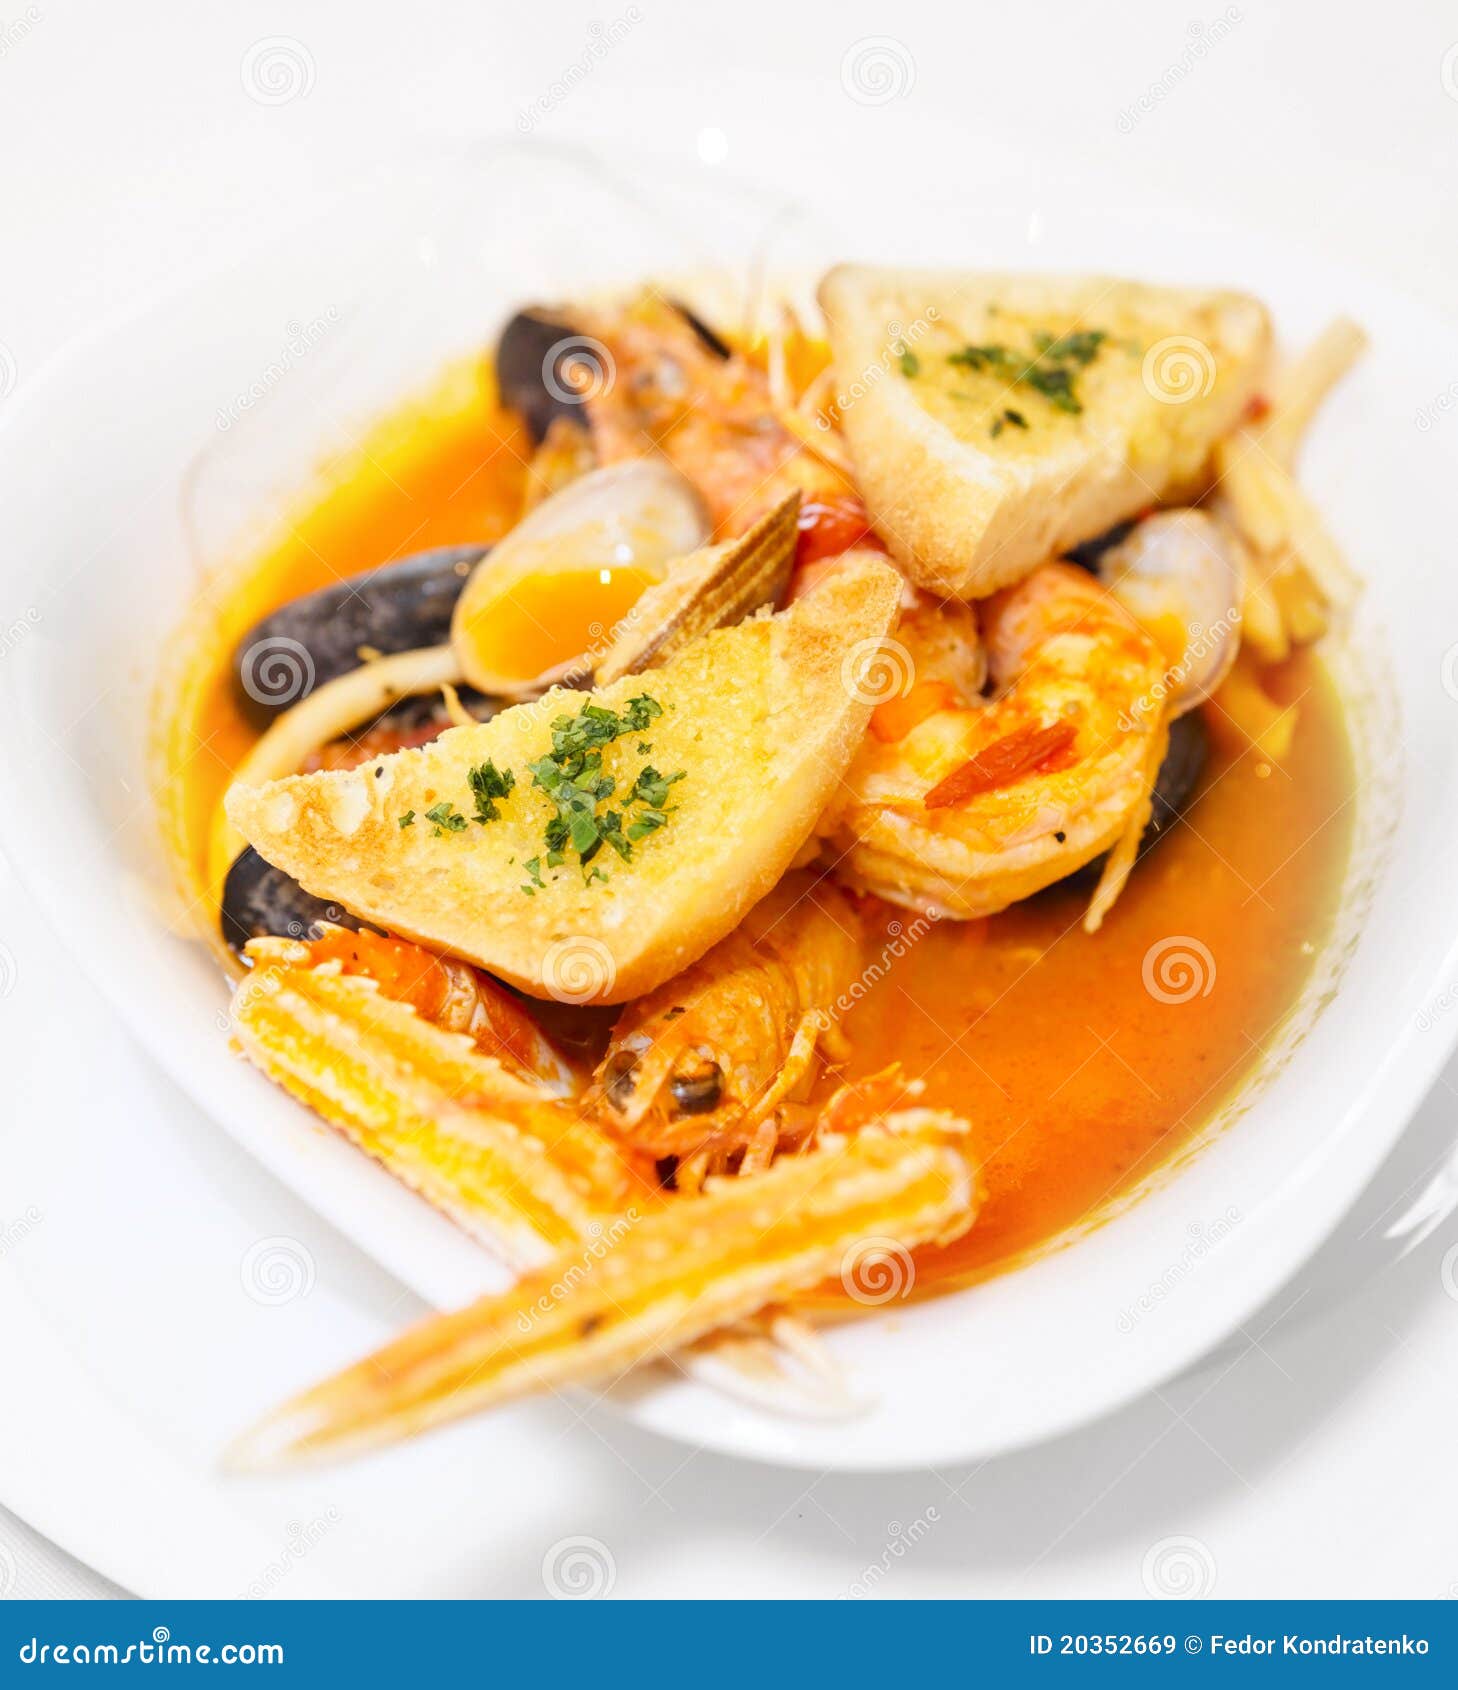 马赛鱼海鲜汤，世界三大名汤之一，法国菜中的无敌至尊汤品 - 哔哩哔哩